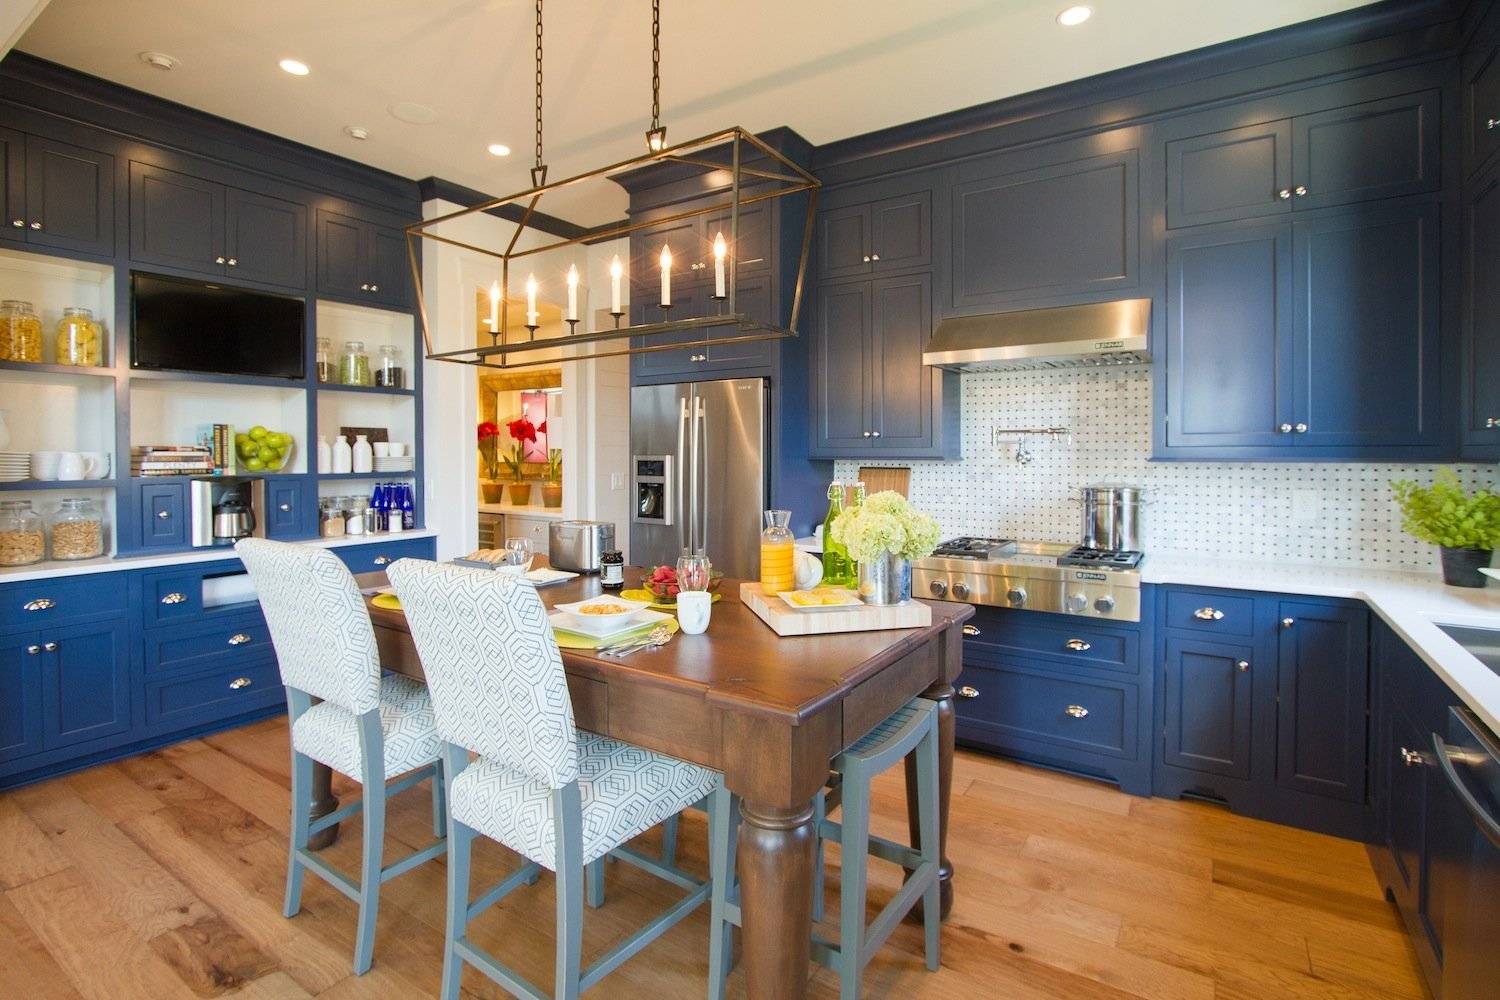 Как может выглядеть синяя кухня? Качественные фото, разные стили и подробное описание.